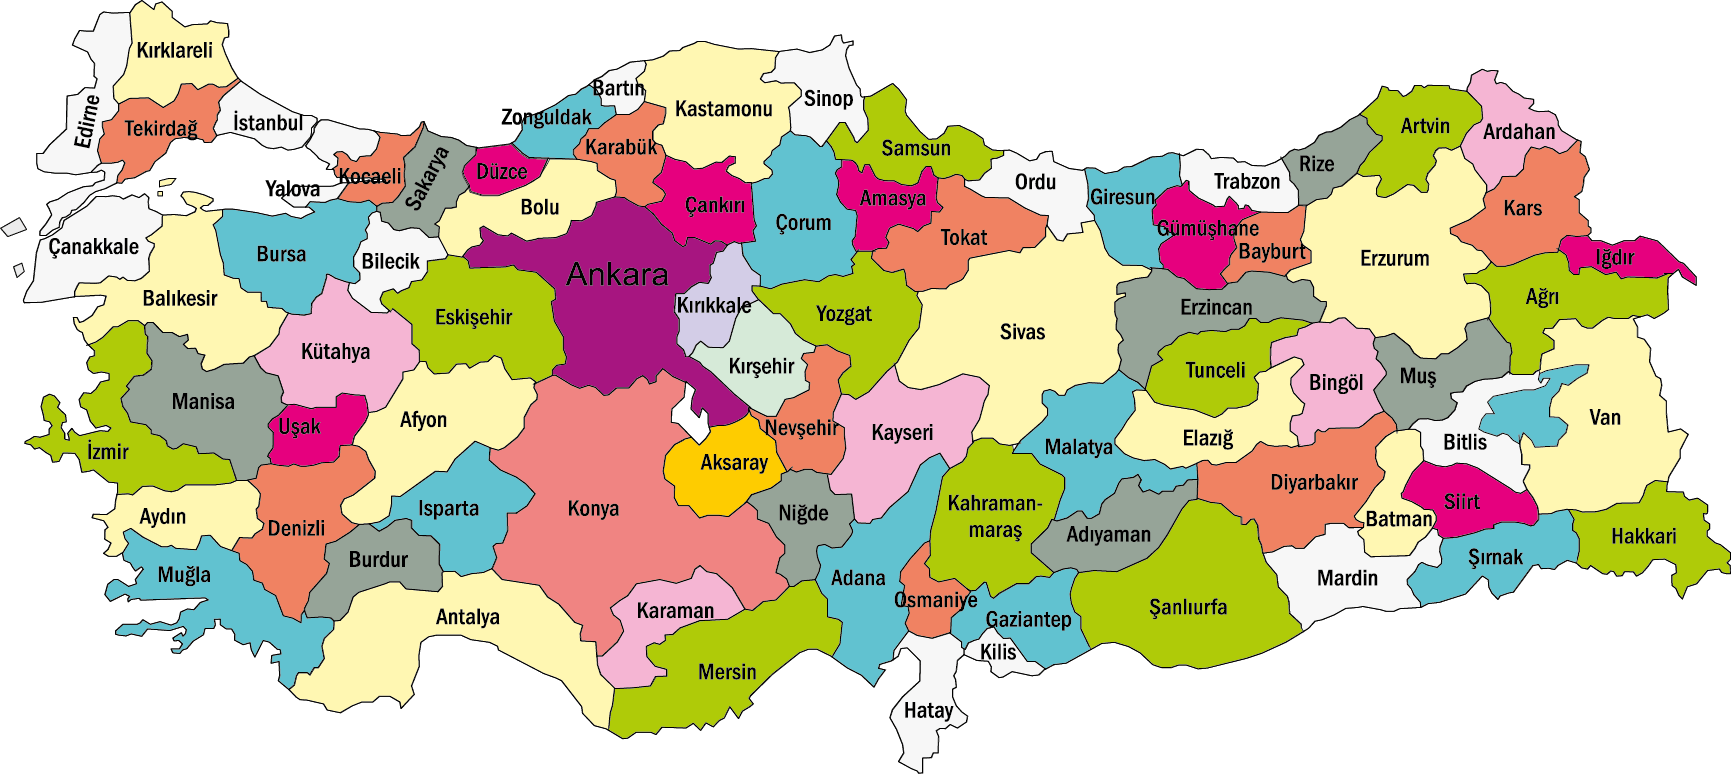 Turkey Map - Türkiye Haritası Download Vector